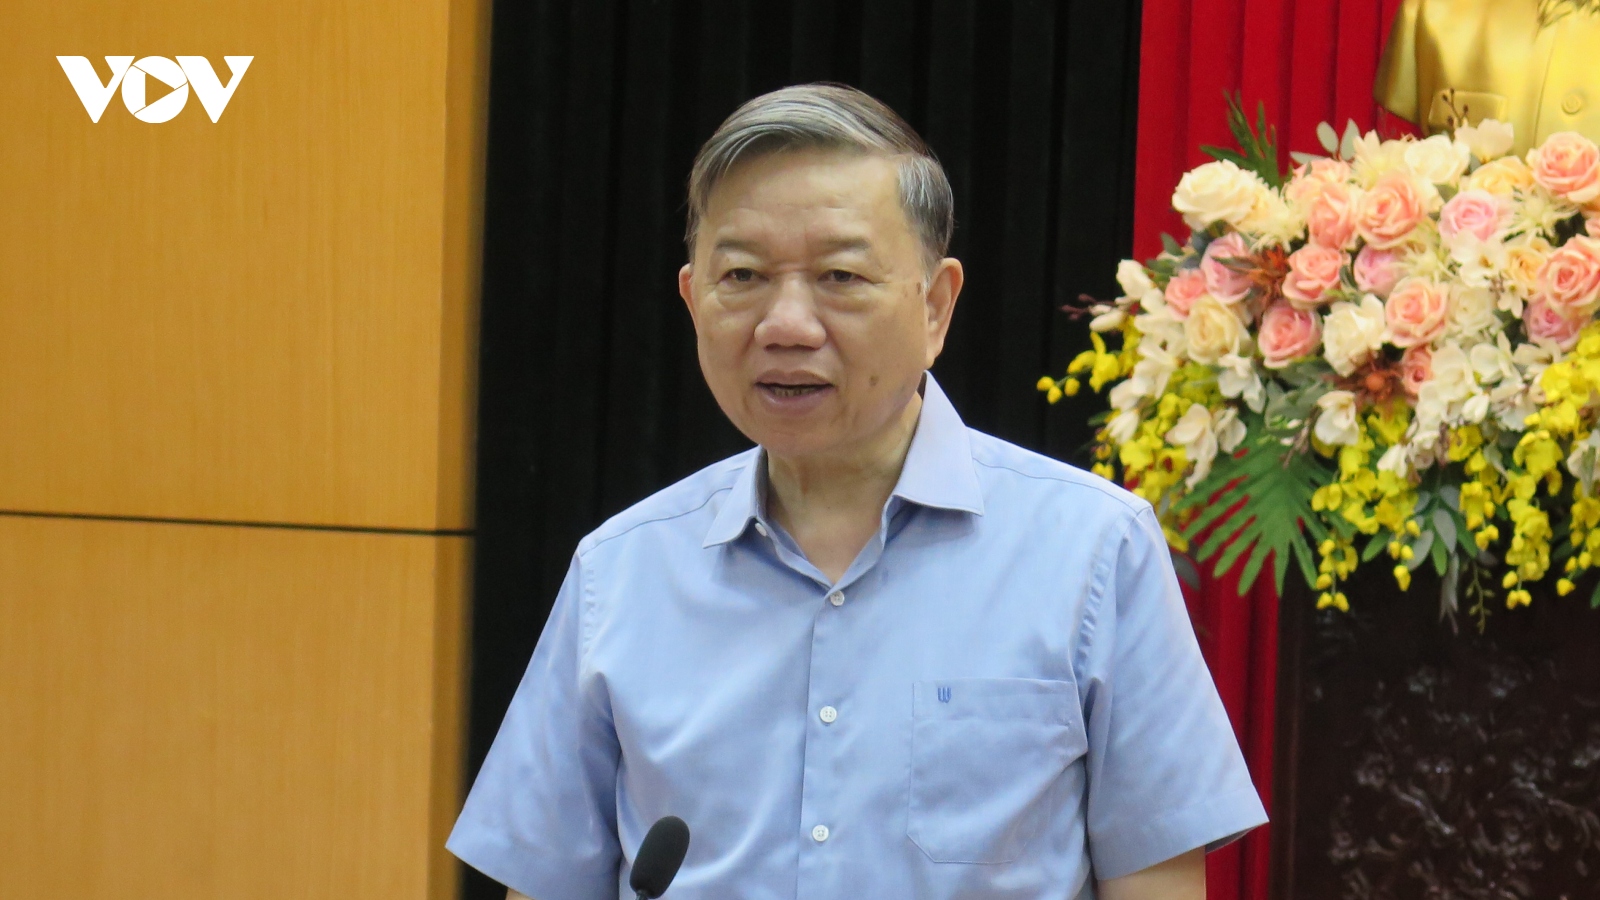 Đại tướng Tô Lâm: Đấu tranh phản bác luận điệu sai trái về bầu cử